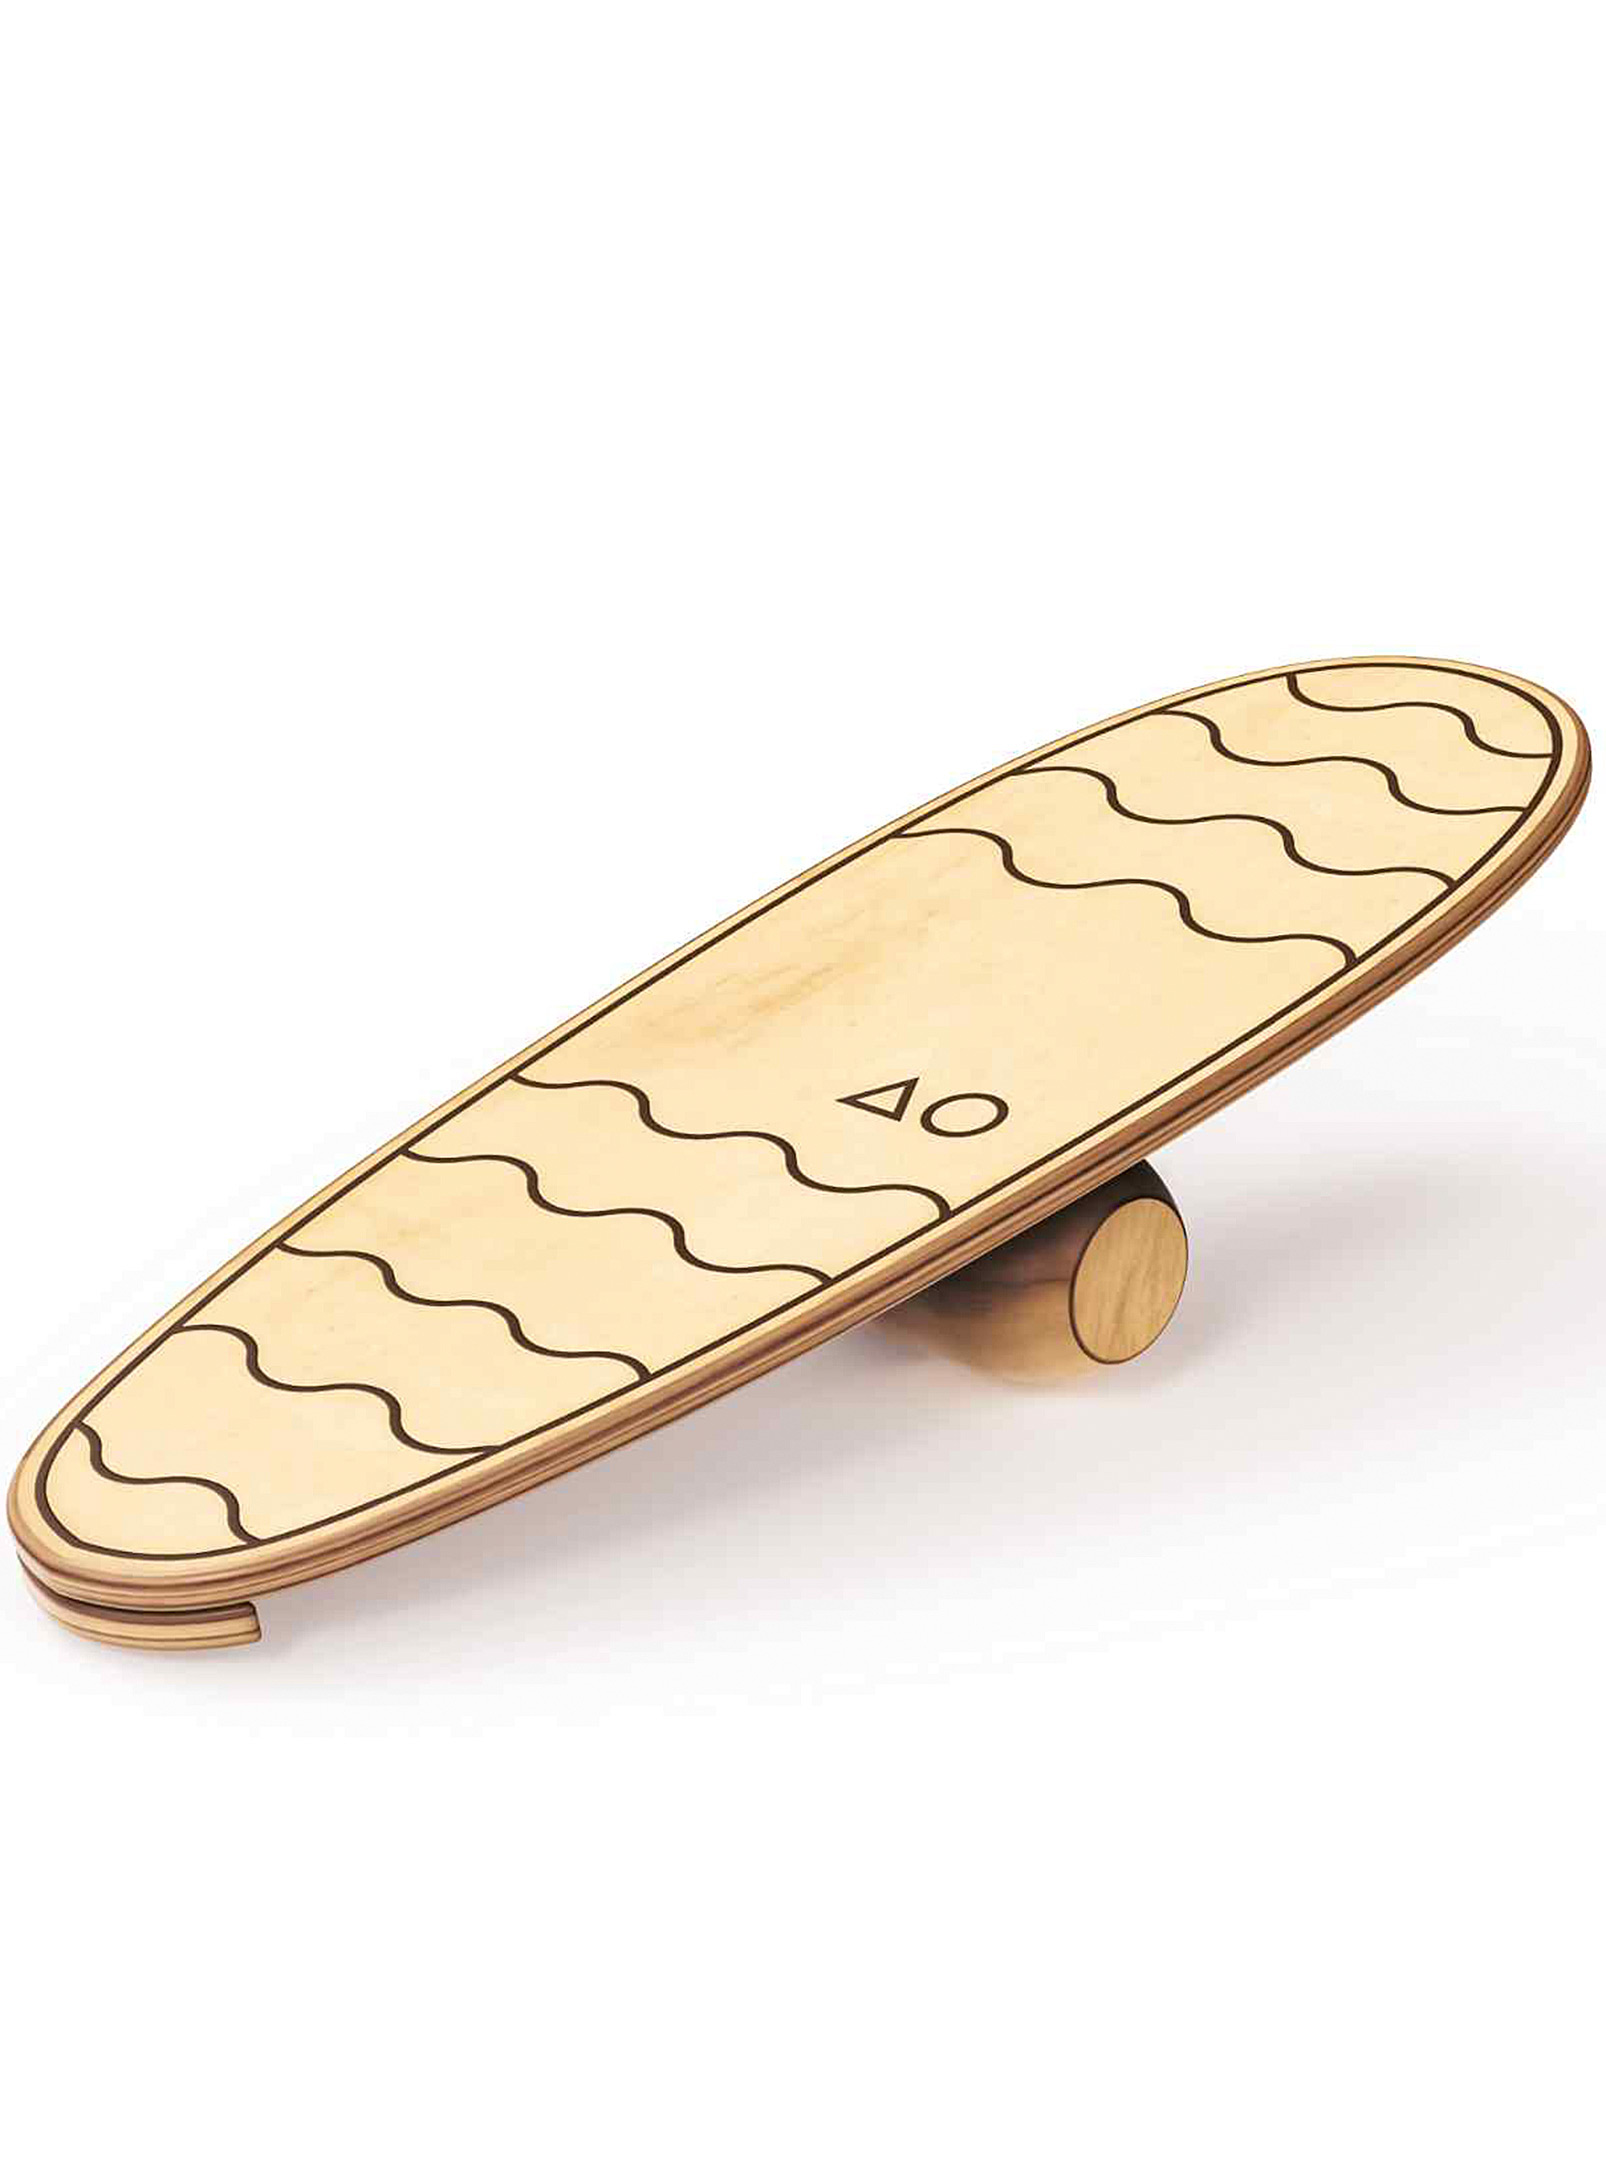 All Circles - La planche d'équilibre en bois Surf